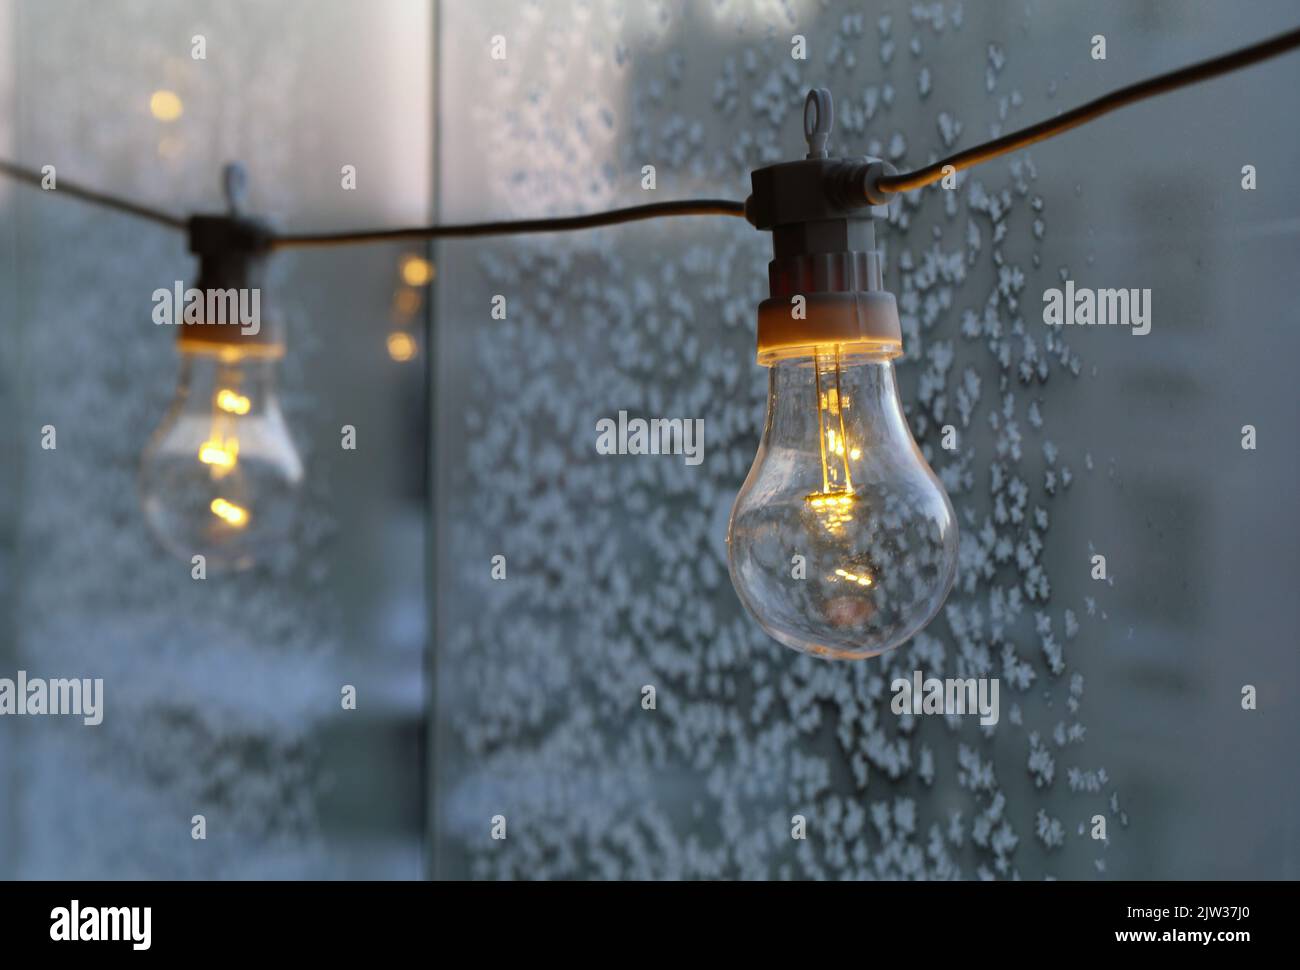 Ampoule simple décorative suspendue sur un balcon par temps froid. Verre avec cristaux de glace en arrière-plan. Énergie, crise énergétique, électricité. Banque D'Images